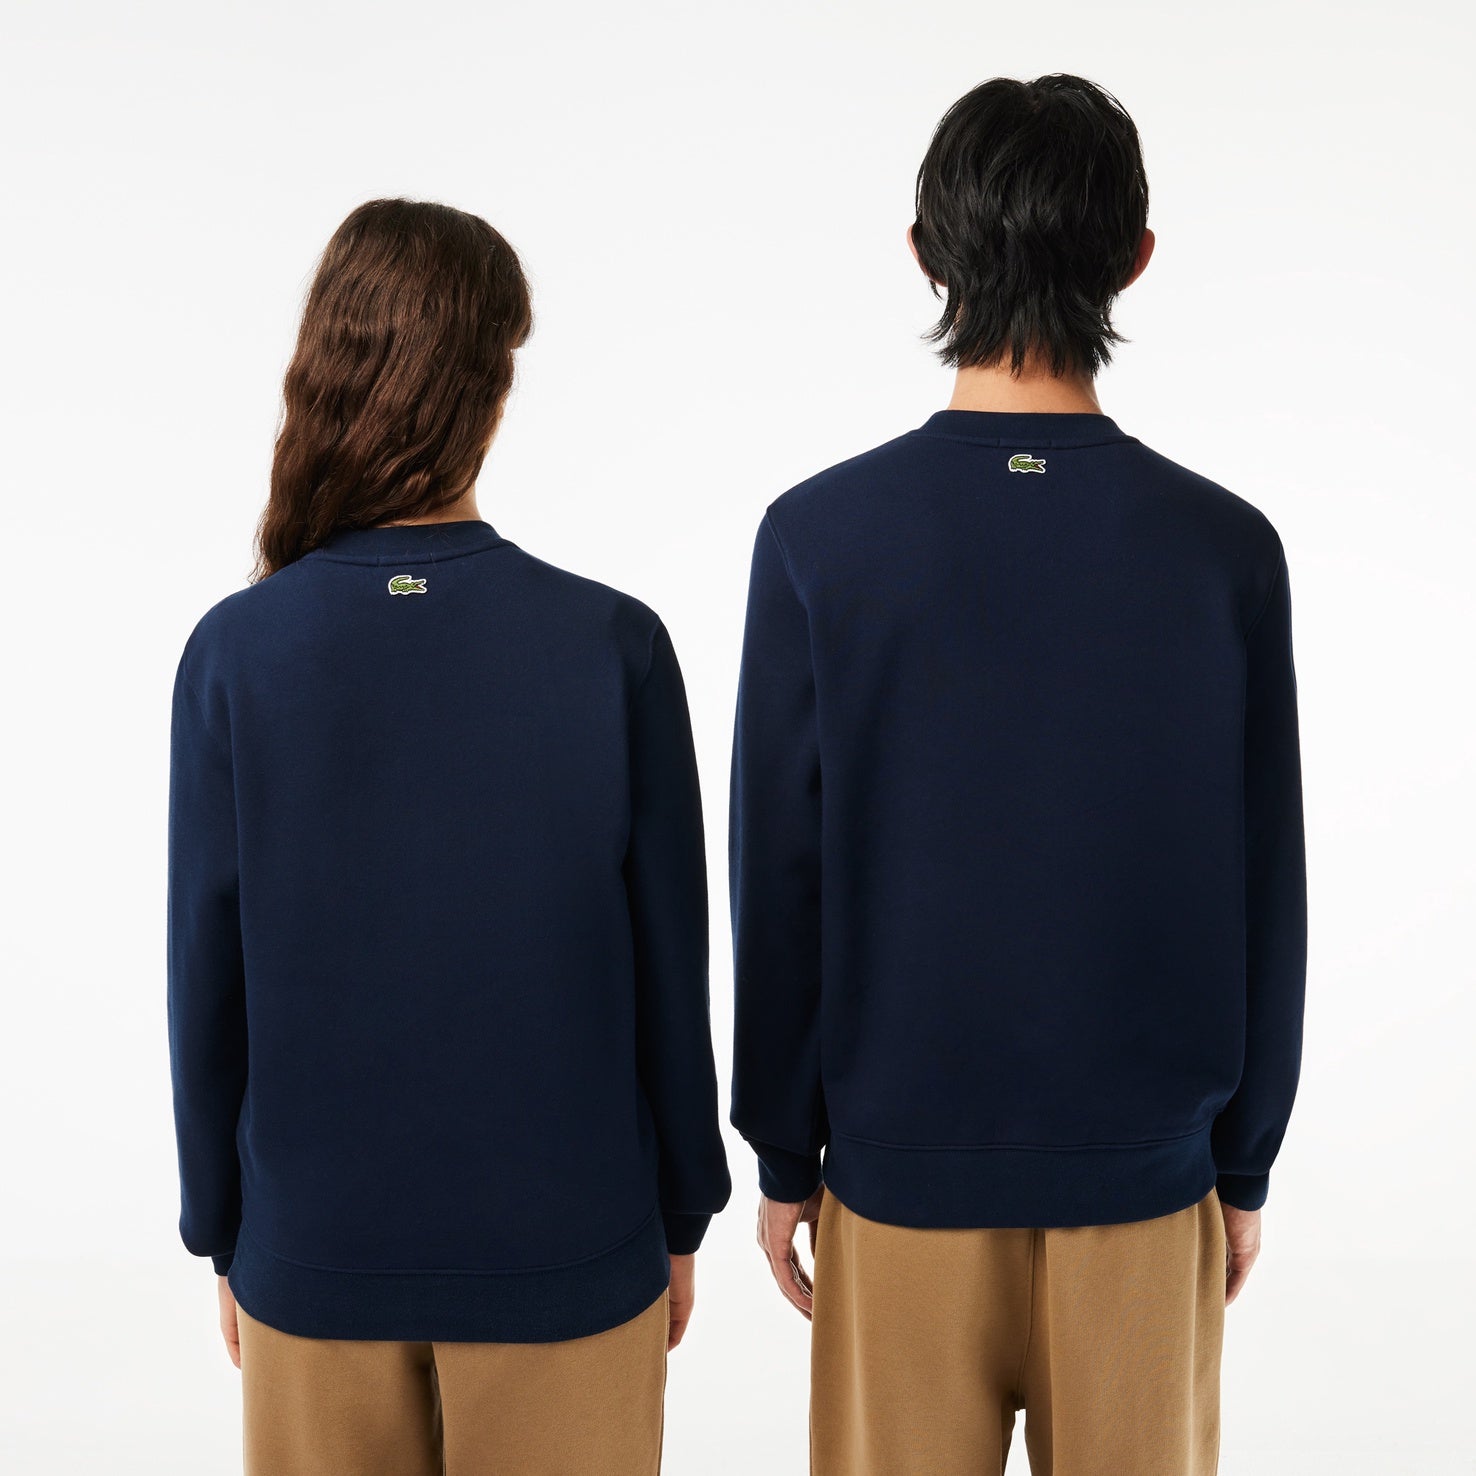 Lacoste Cotton Fleece Branded Sweatshirt Blue 166 SH1228 Navy